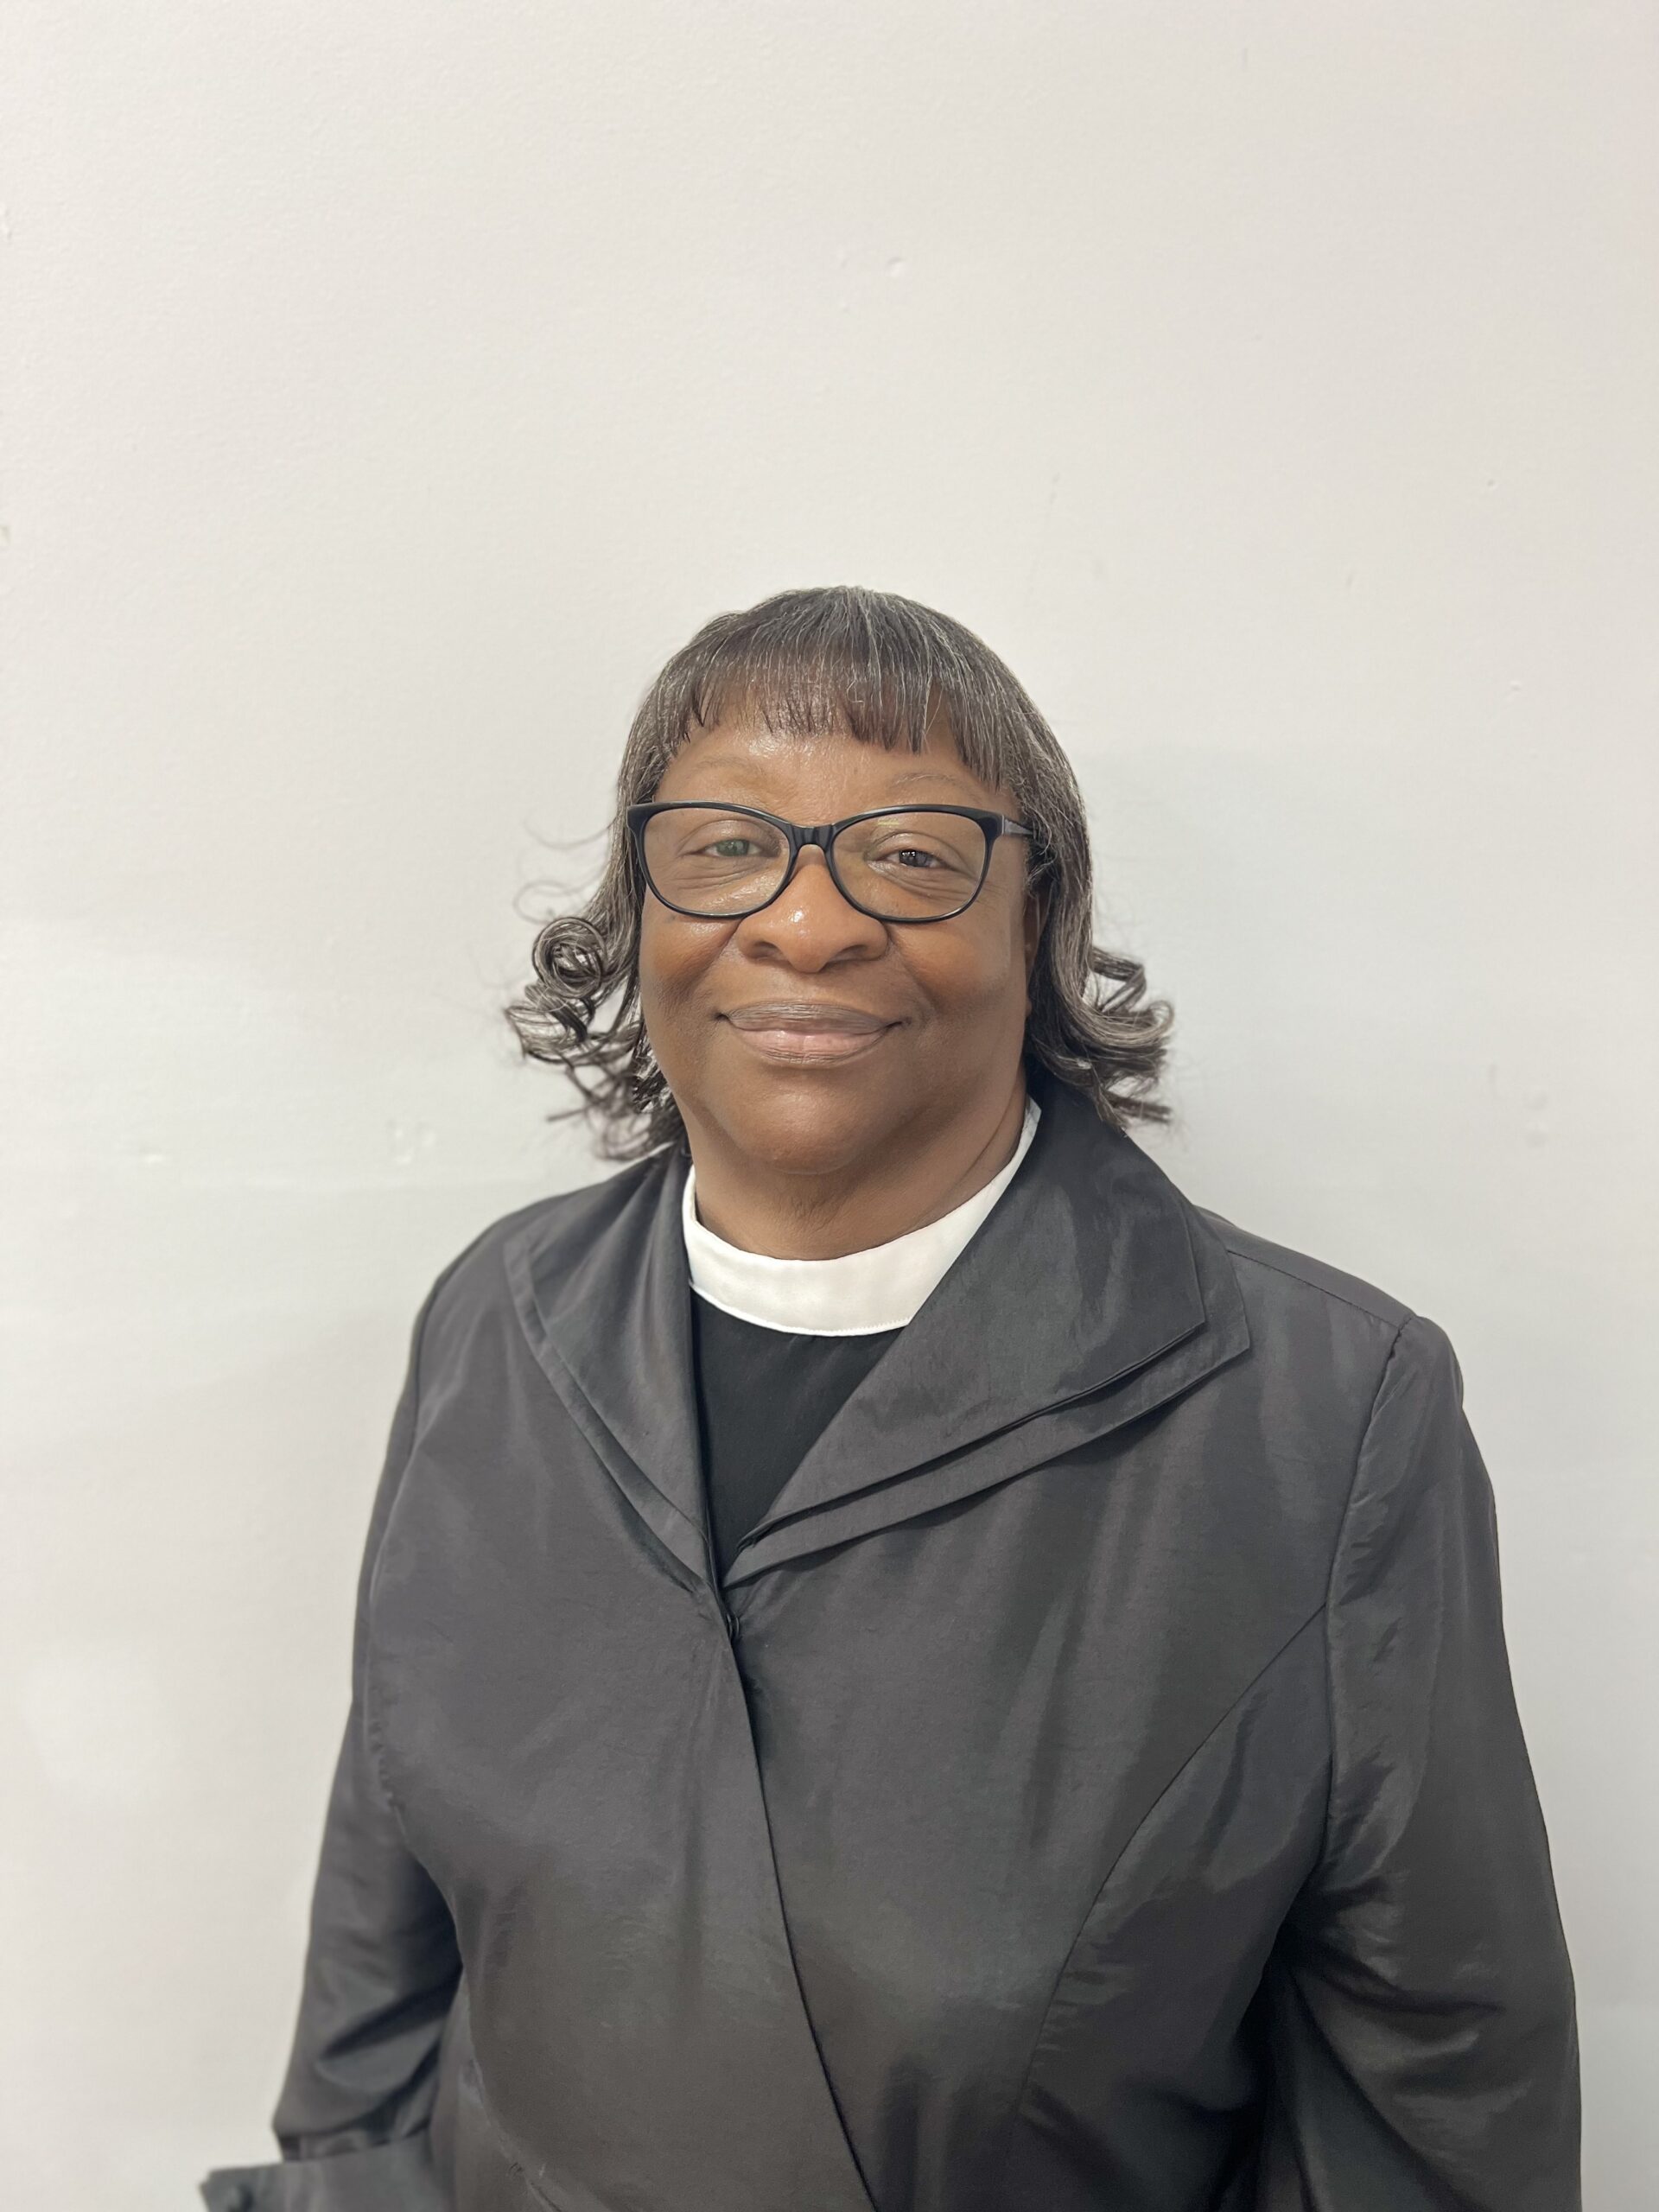 Elder Brenda McCove